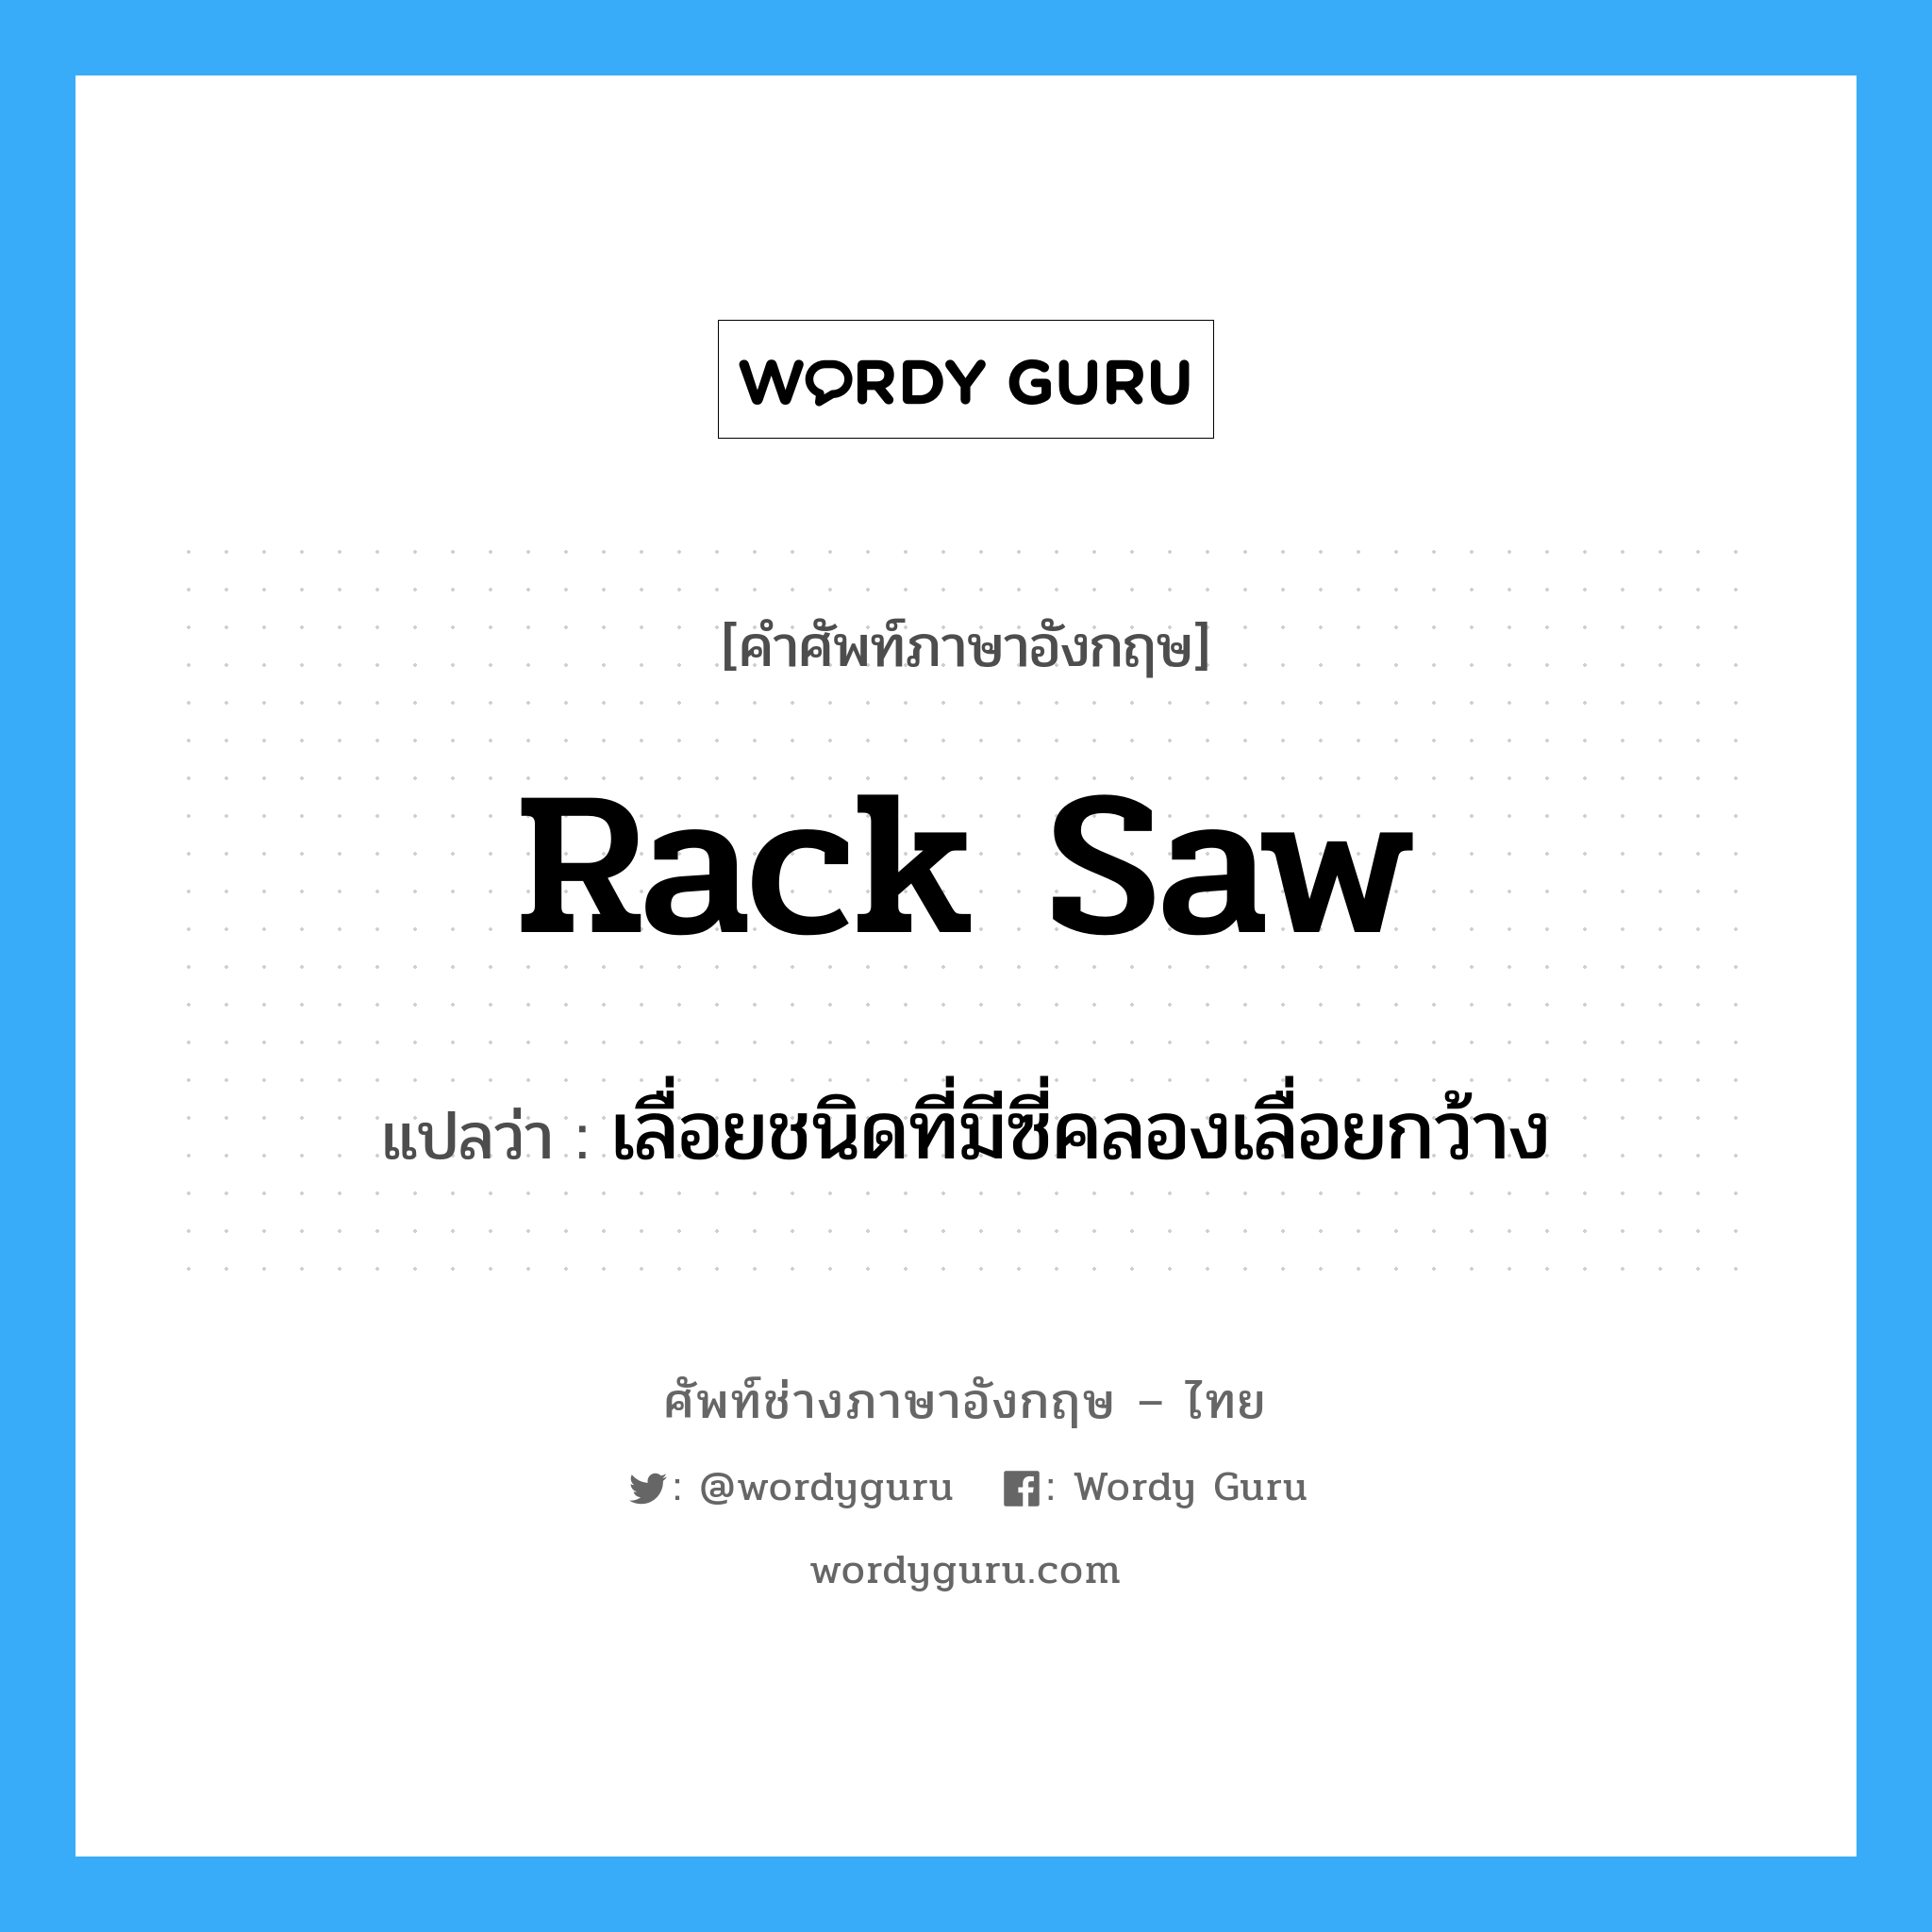 rack saw แปลว่า?, คำศัพท์ช่างภาษาอังกฤษ - ไทย rack saw คำศัพท์ภาษาอังกฤษ rack saw แปลว่า เลื่อยชนิดที่มีซี่คลองเลื่อยกว้าง